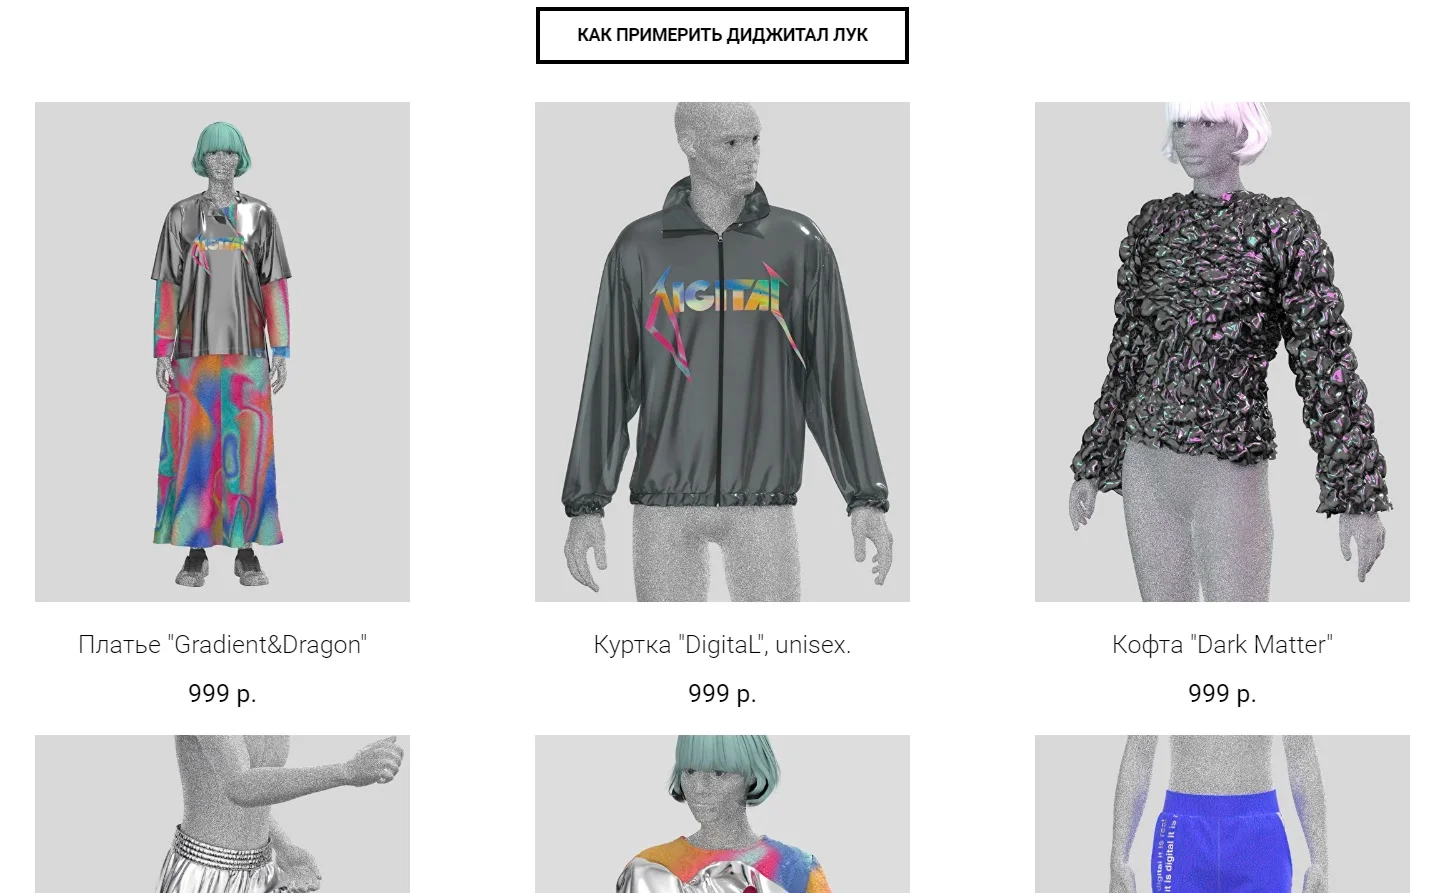 Первый российский онлайн-магазин виртуальной одежды назвали Replicant - фото 1